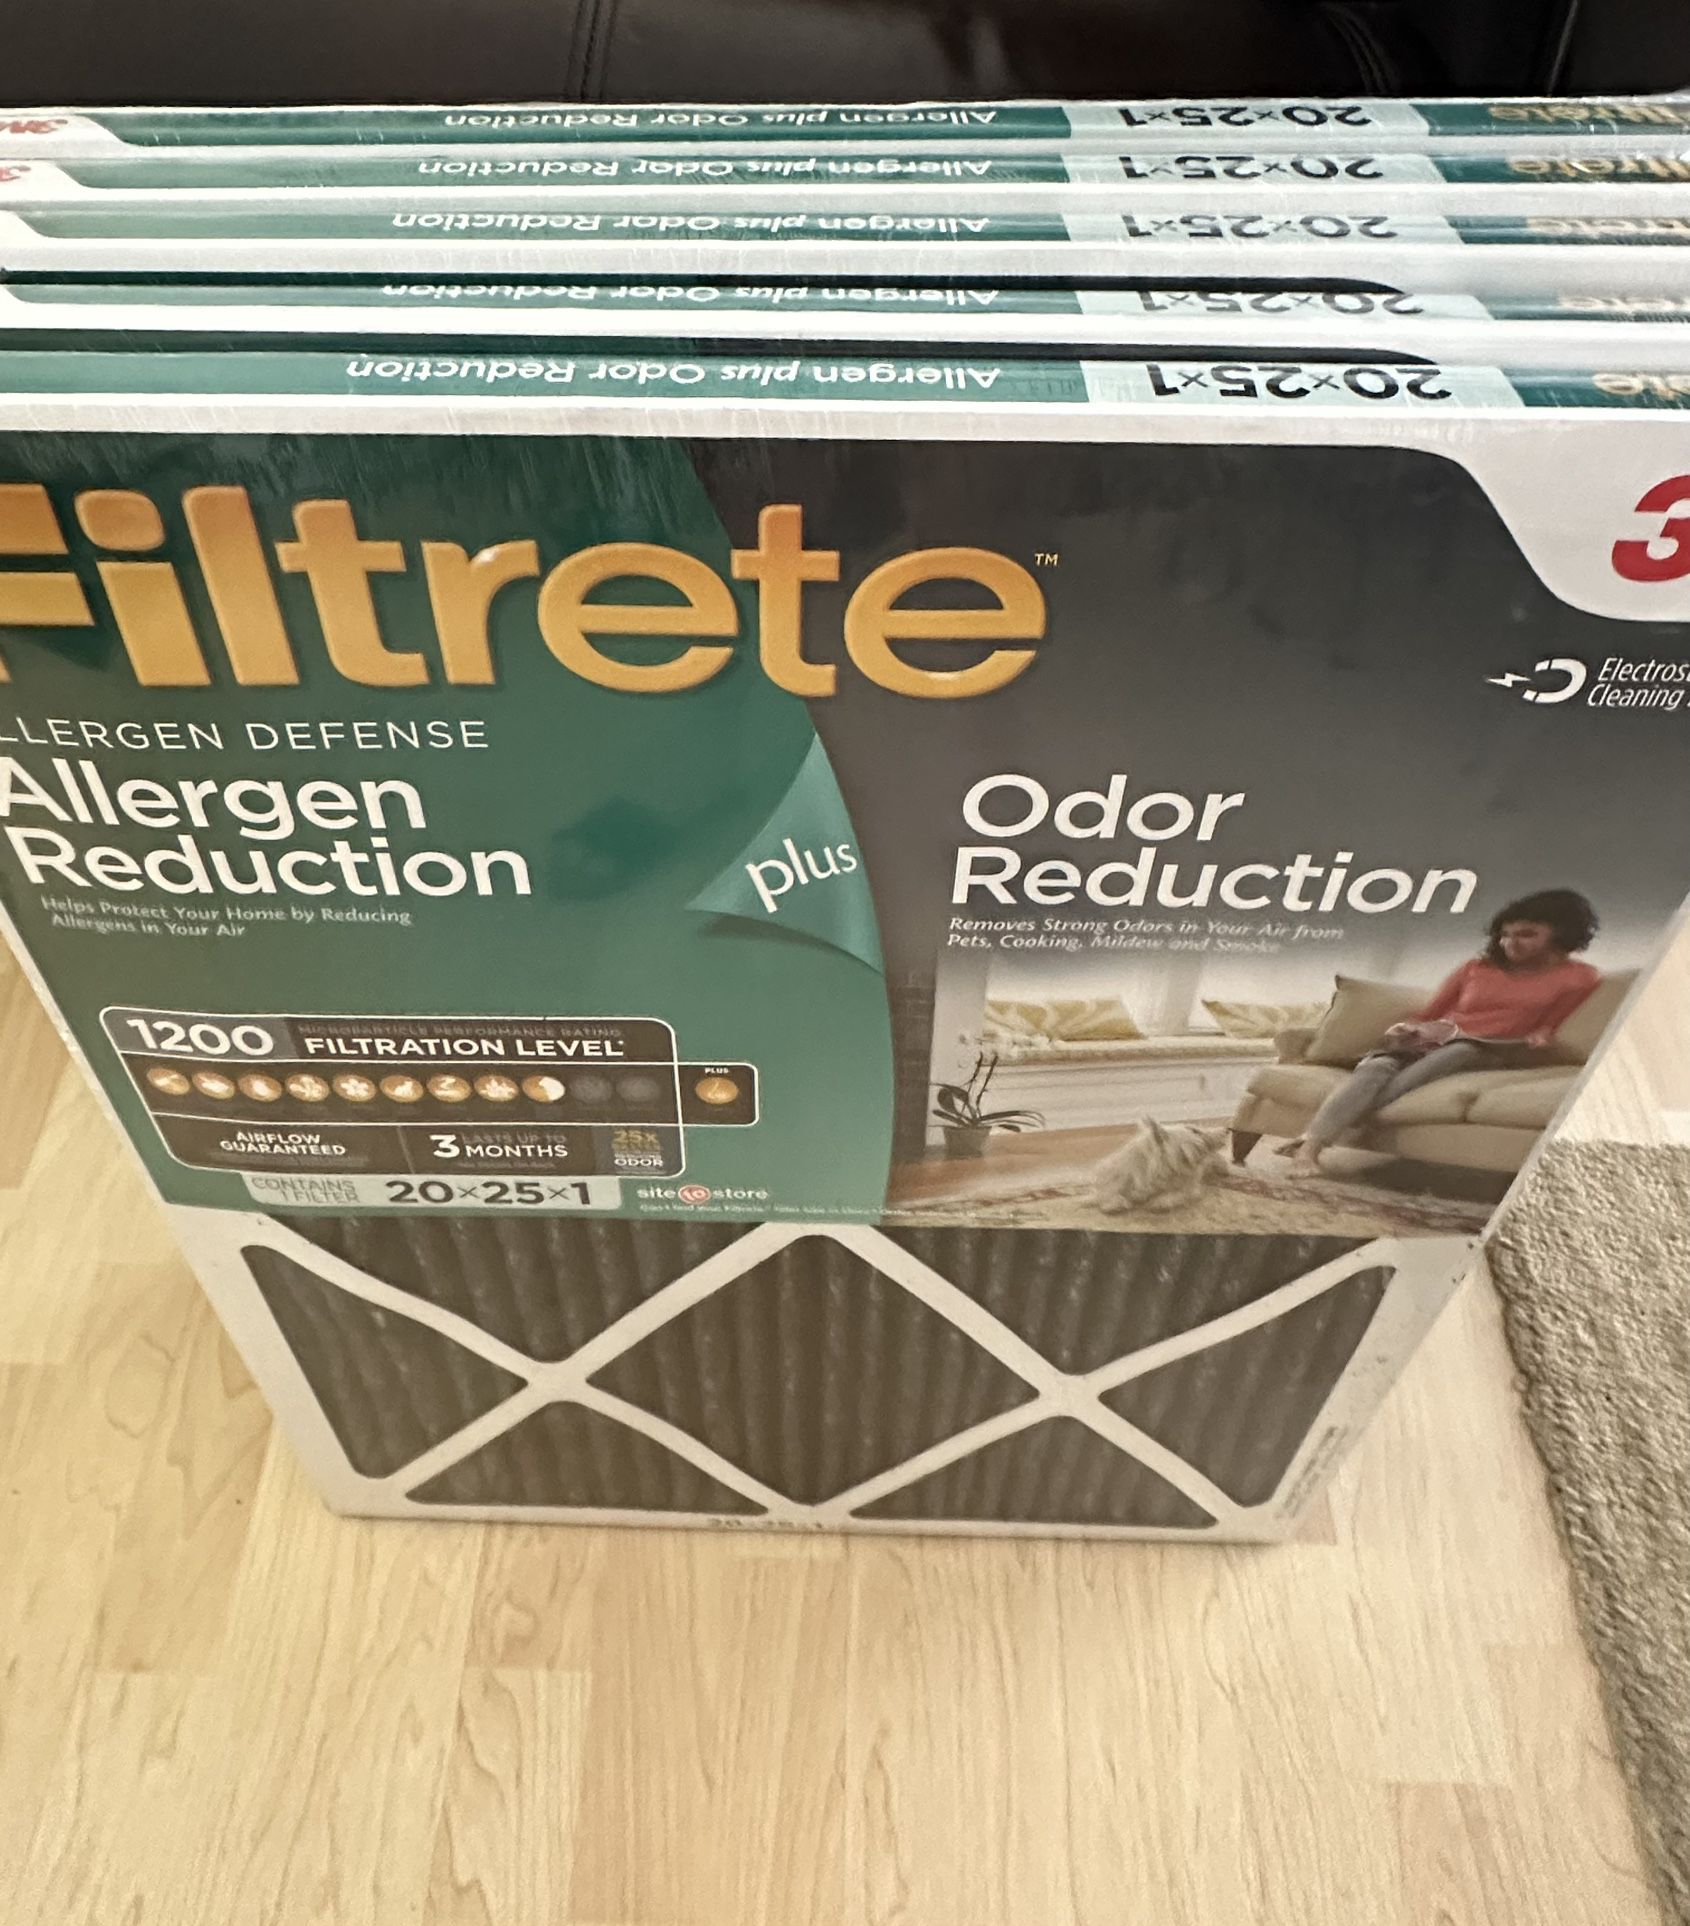 Filtrete by 3M, 20×25x1, MERV 11, Allergen Plus Odor Reduction HVAC Furnace Air Filter, Captures Pet Dander, Pollen and Traps Odor, 1200 MPR, Filter